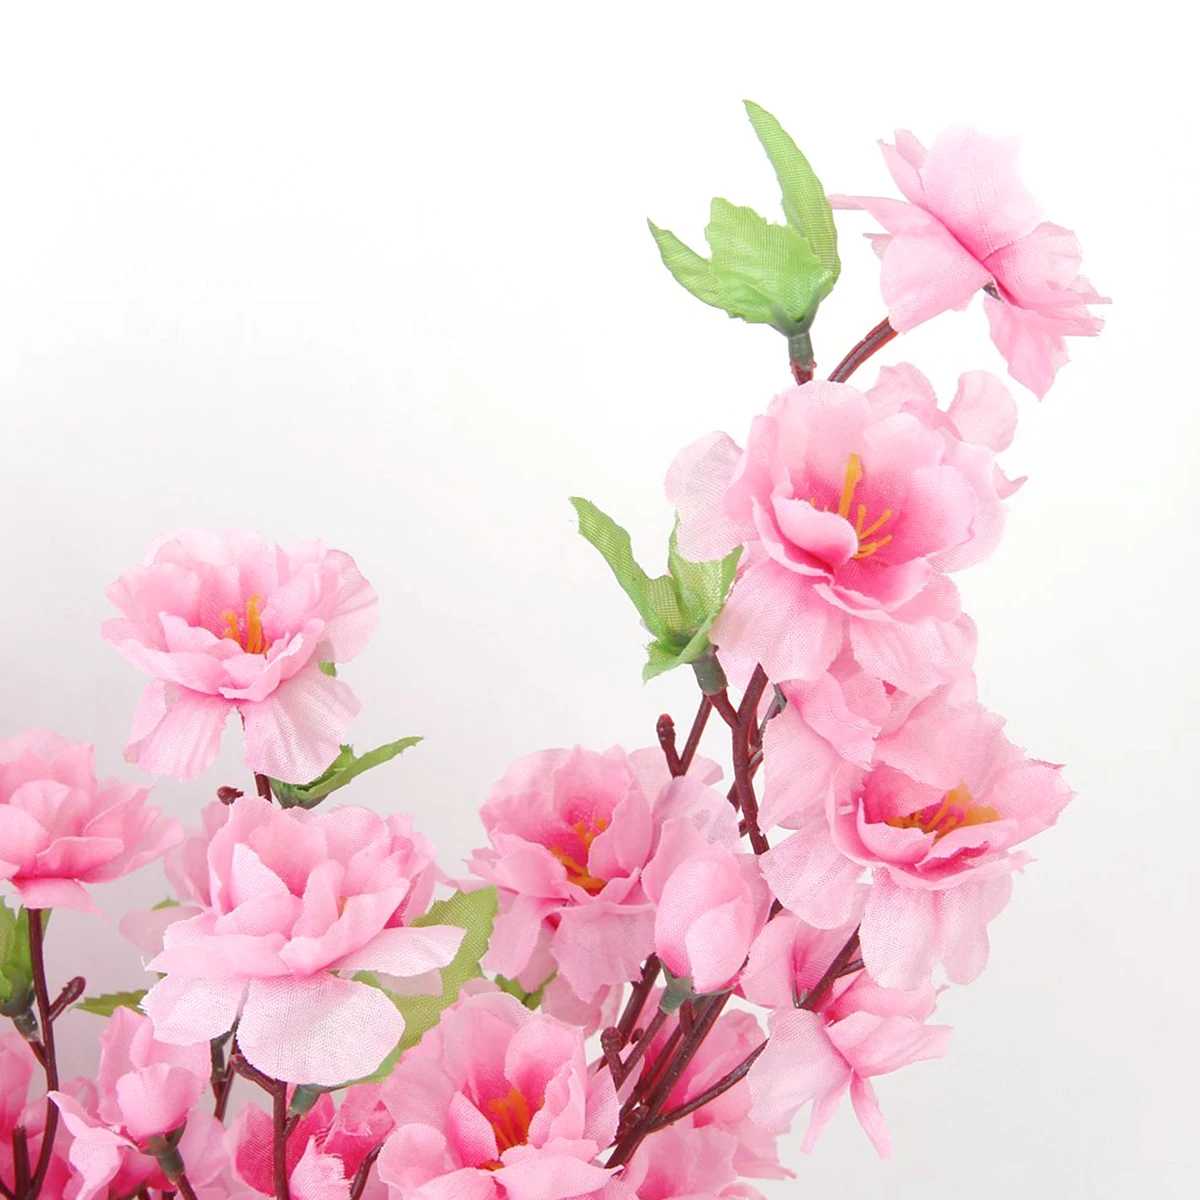 6 шт. искусственные цветки вишни Весенняя Слива персик ветка Шелковый цветок дерево Искусственные растения для украшения свадебной вечеринки